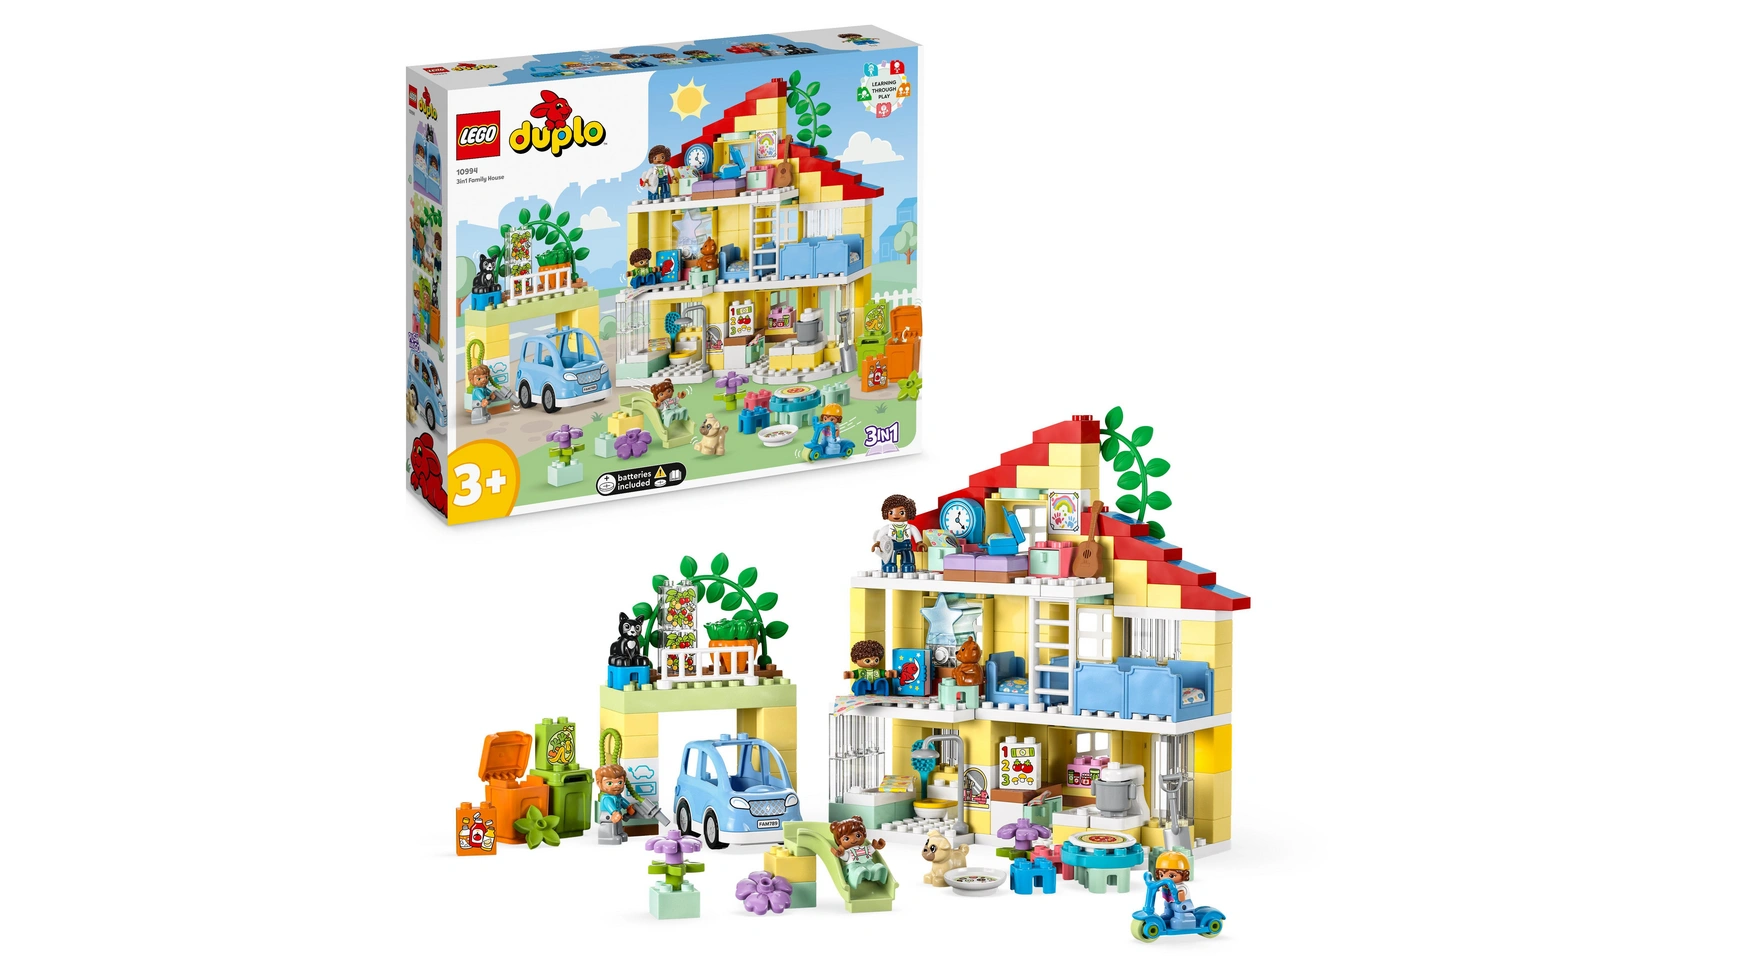 Lego DUPLO Семейный дом 3-в-1 конструктор lego duplo семейный дом на колесах 10986 31 деталь